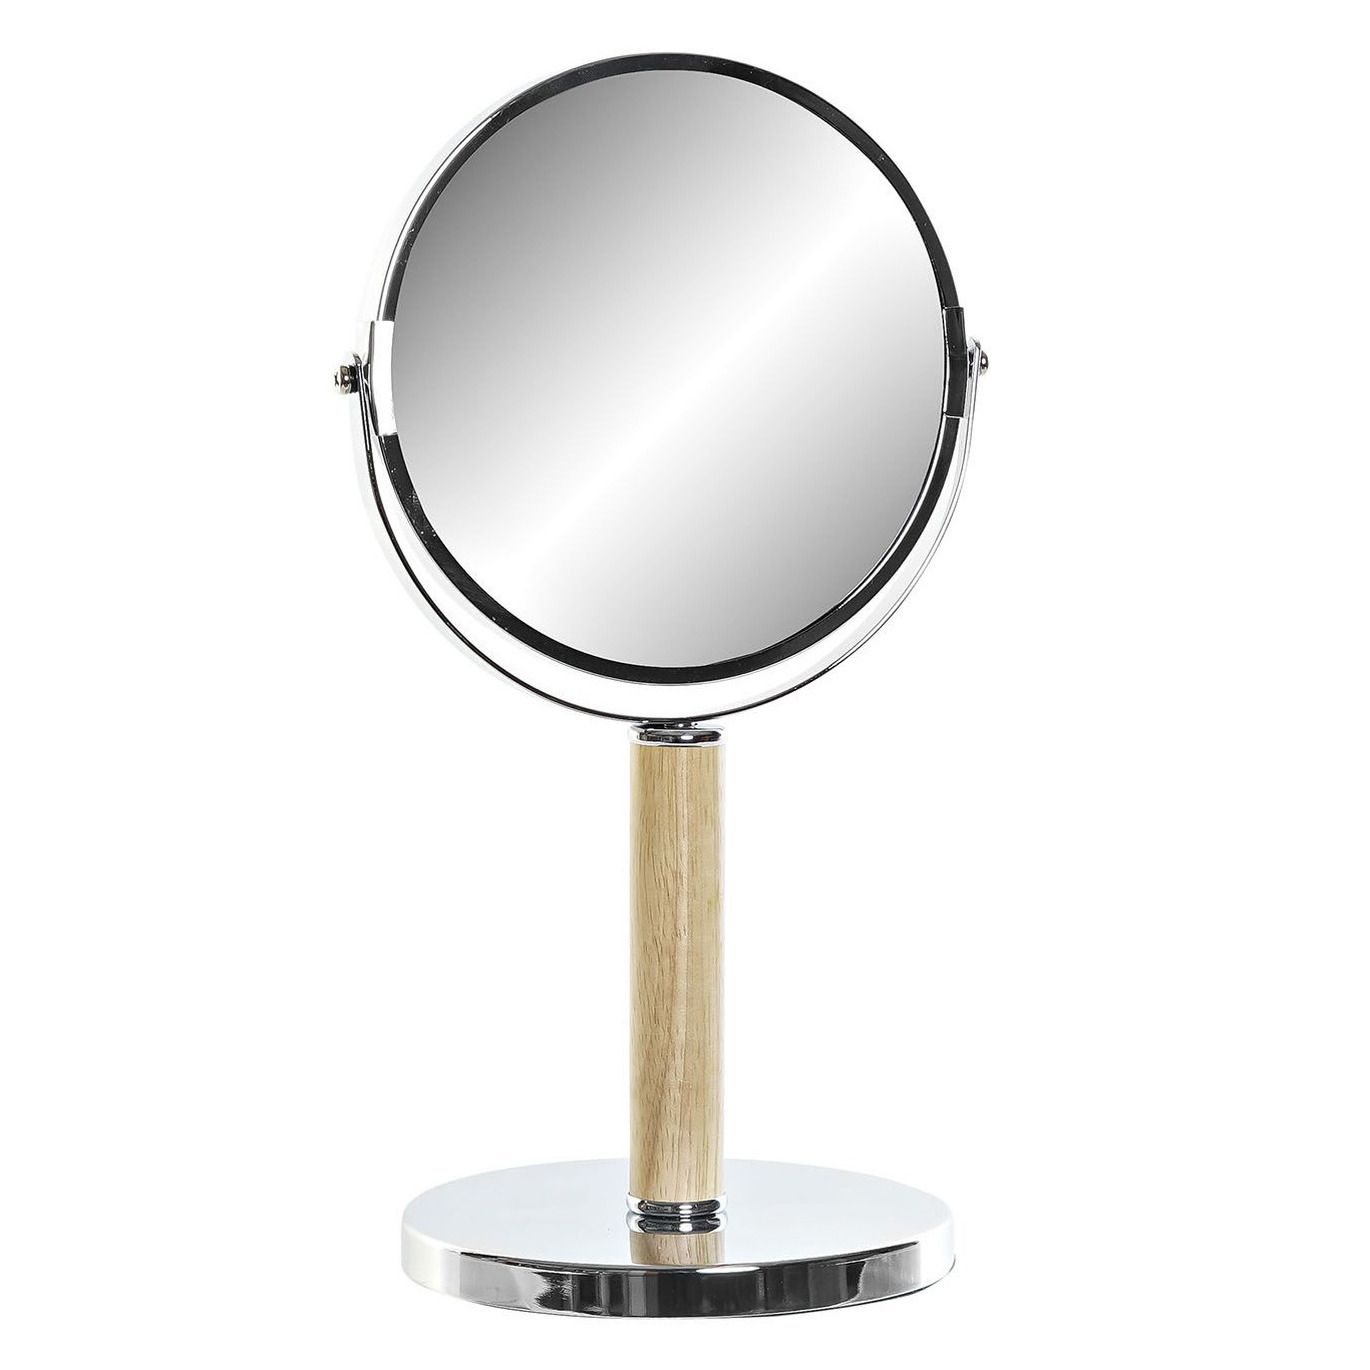 Badkamerspiegel-make-up spiegel rond dubbelzijdig metaal zilver D19 x H34 cm